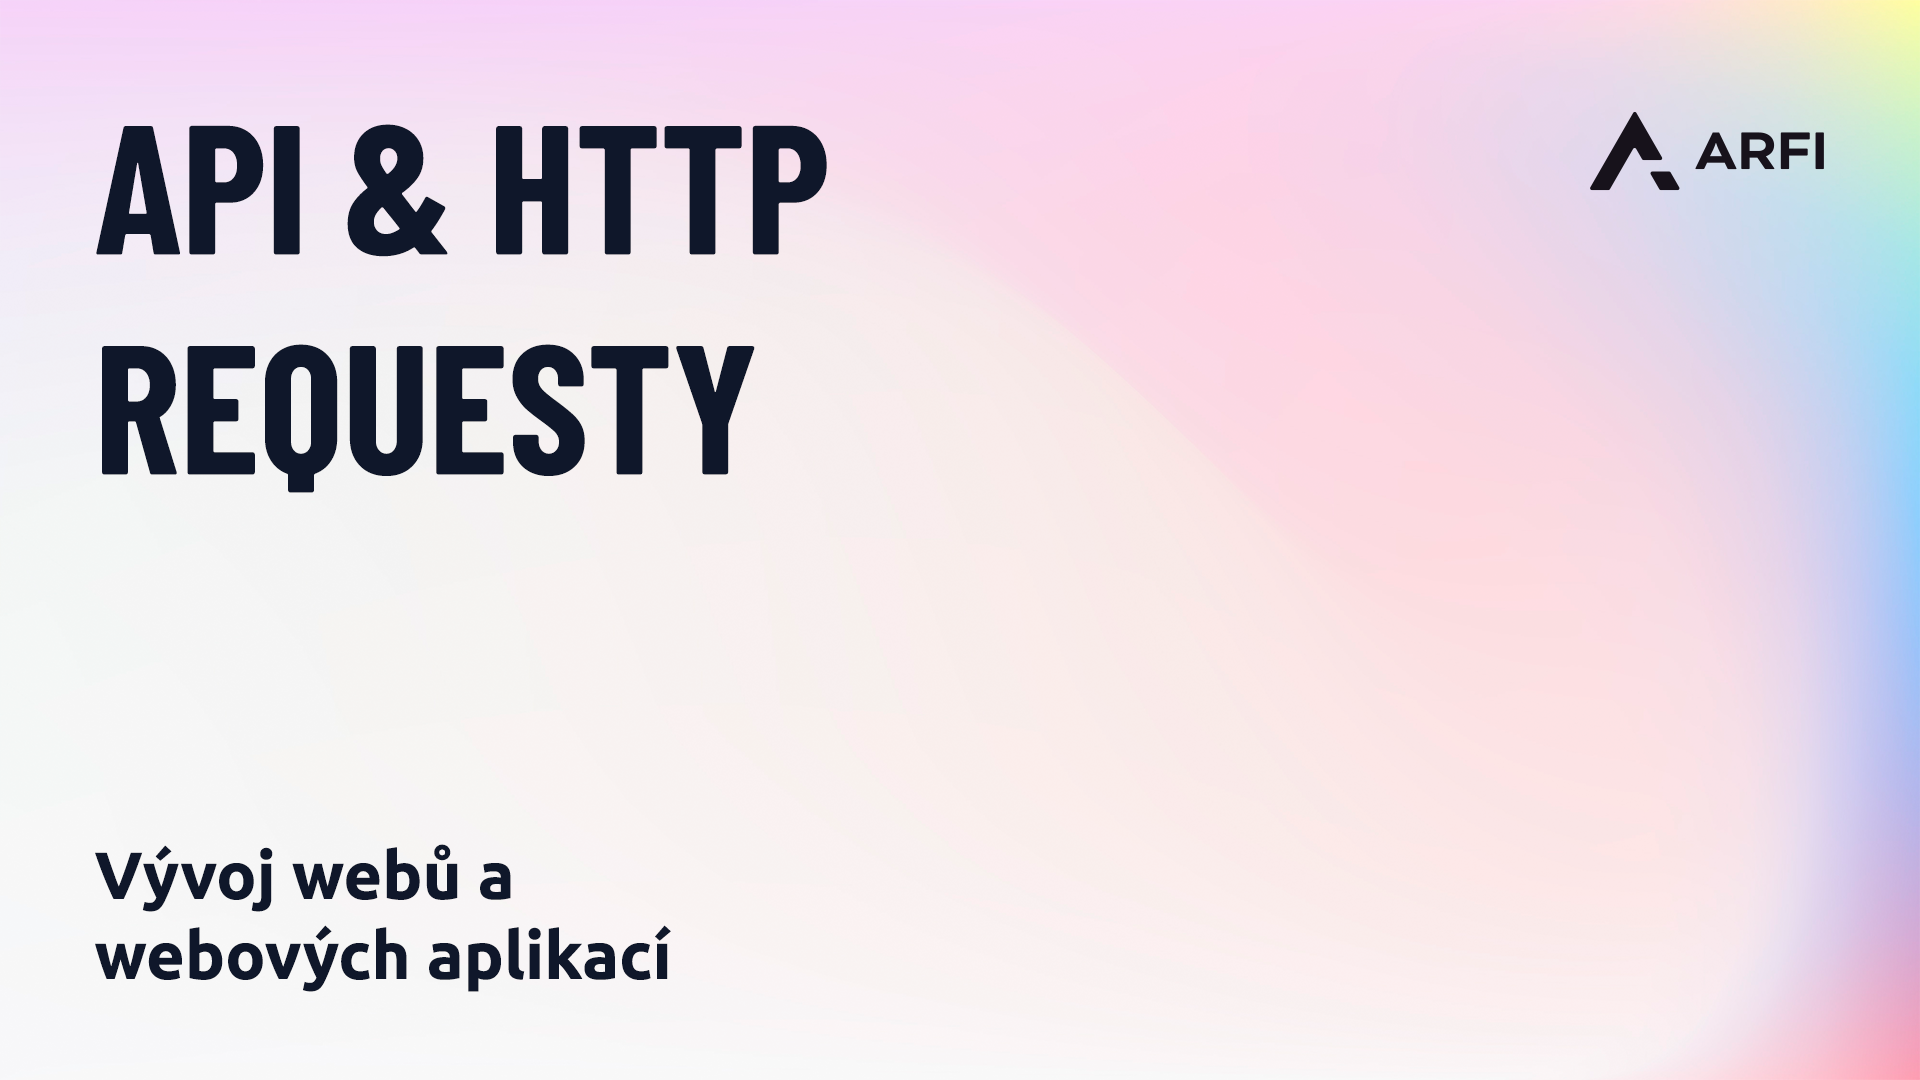 API & HTTP requesty